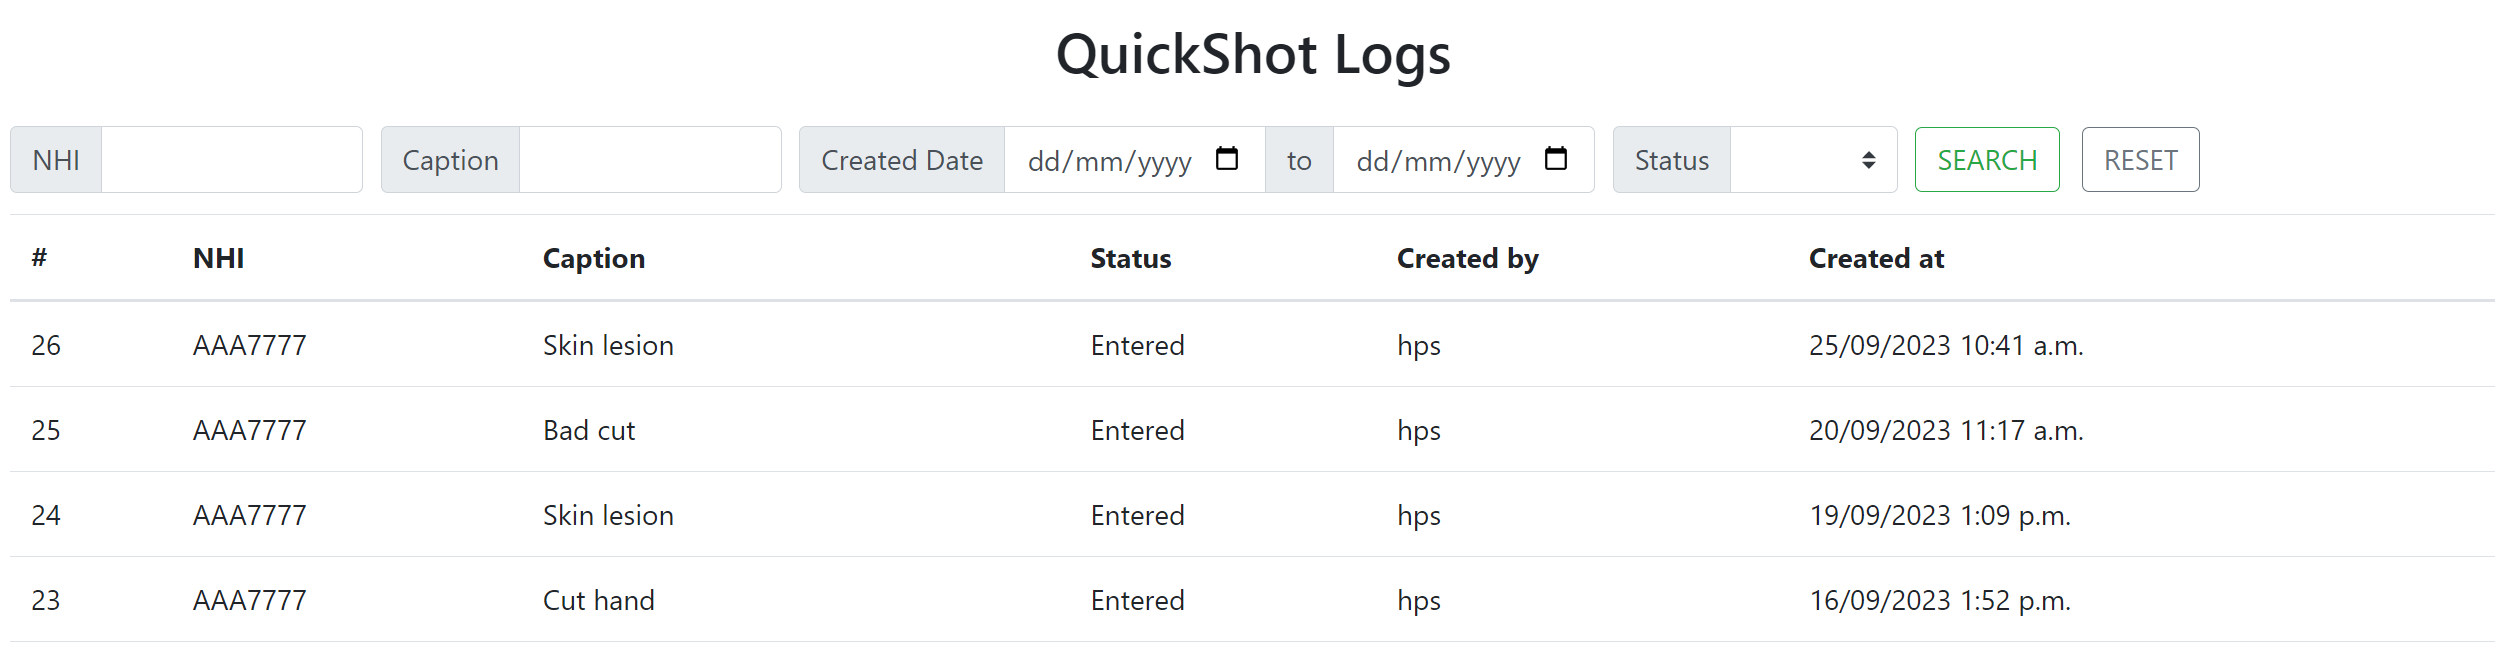 quickshot logs